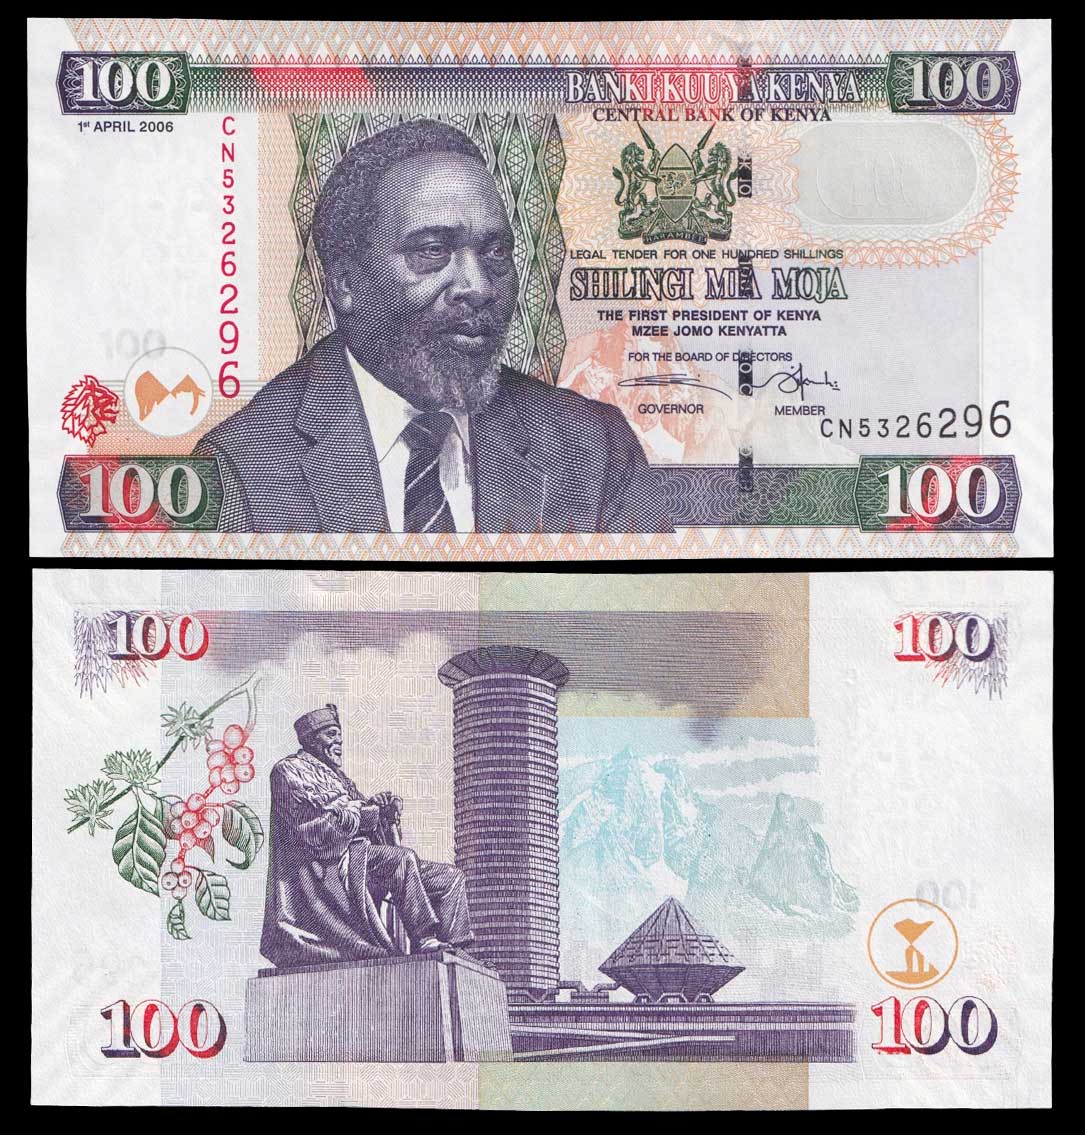 KENYA 100 Shillings 2006 Pick 48 b Fior di Stampa